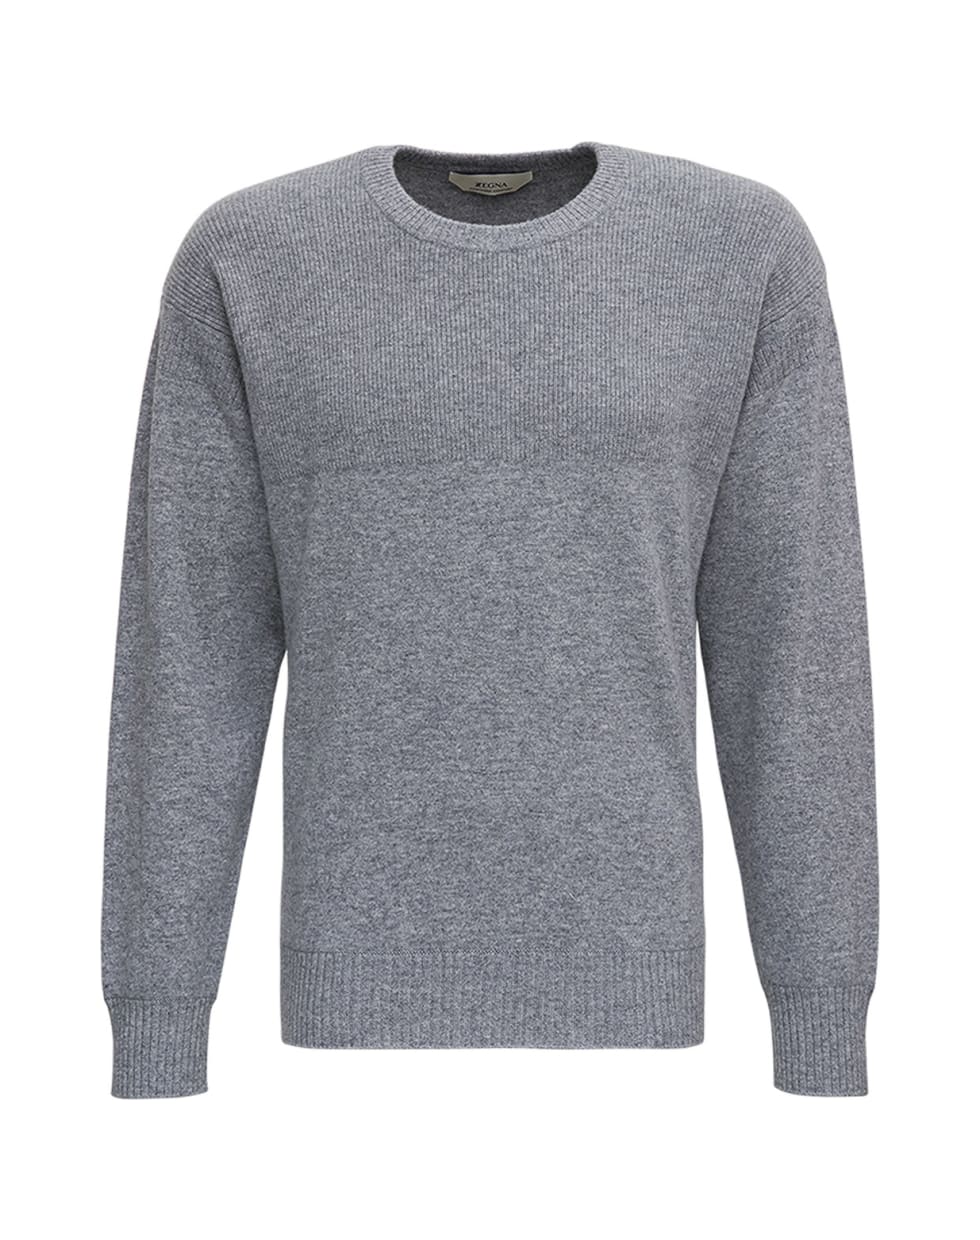 Z Zegna Grey Cashmere Crew Neck Sweater - Grey